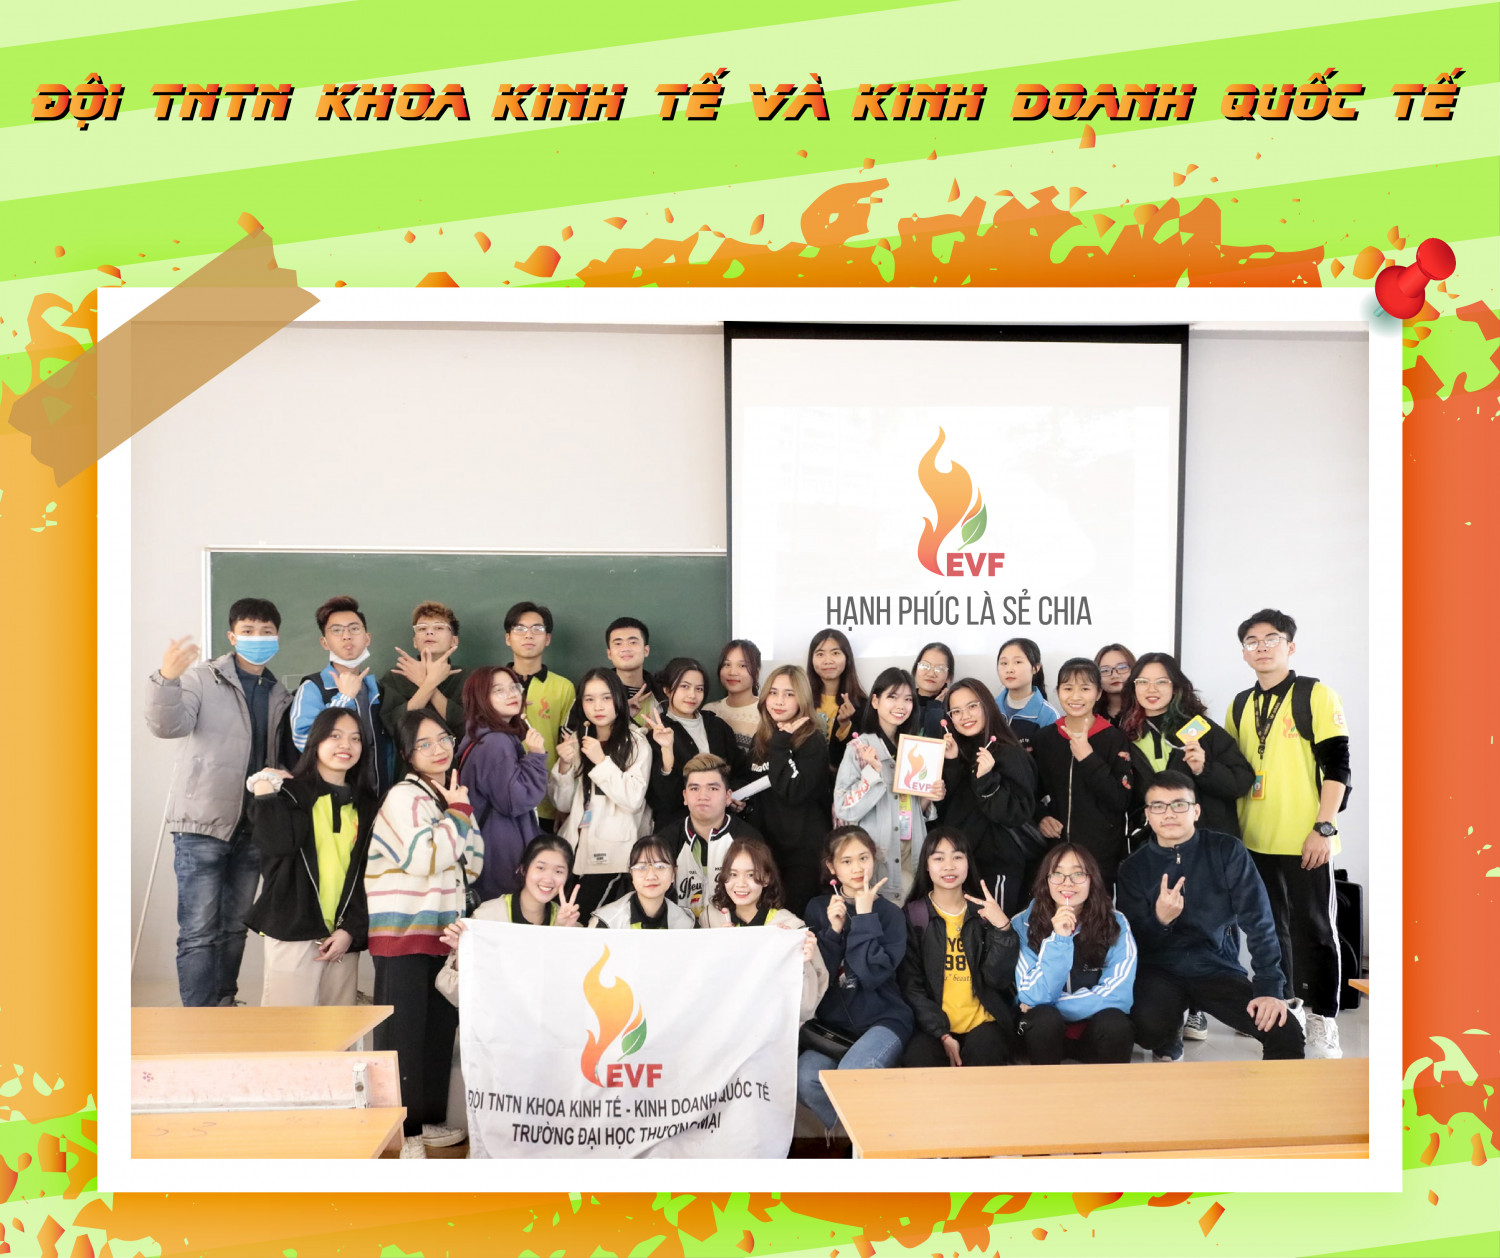 EVF - Đội TNTN khoa Kinh tế và Kinh doanh quốc tế - trường ĐH Thương Mại